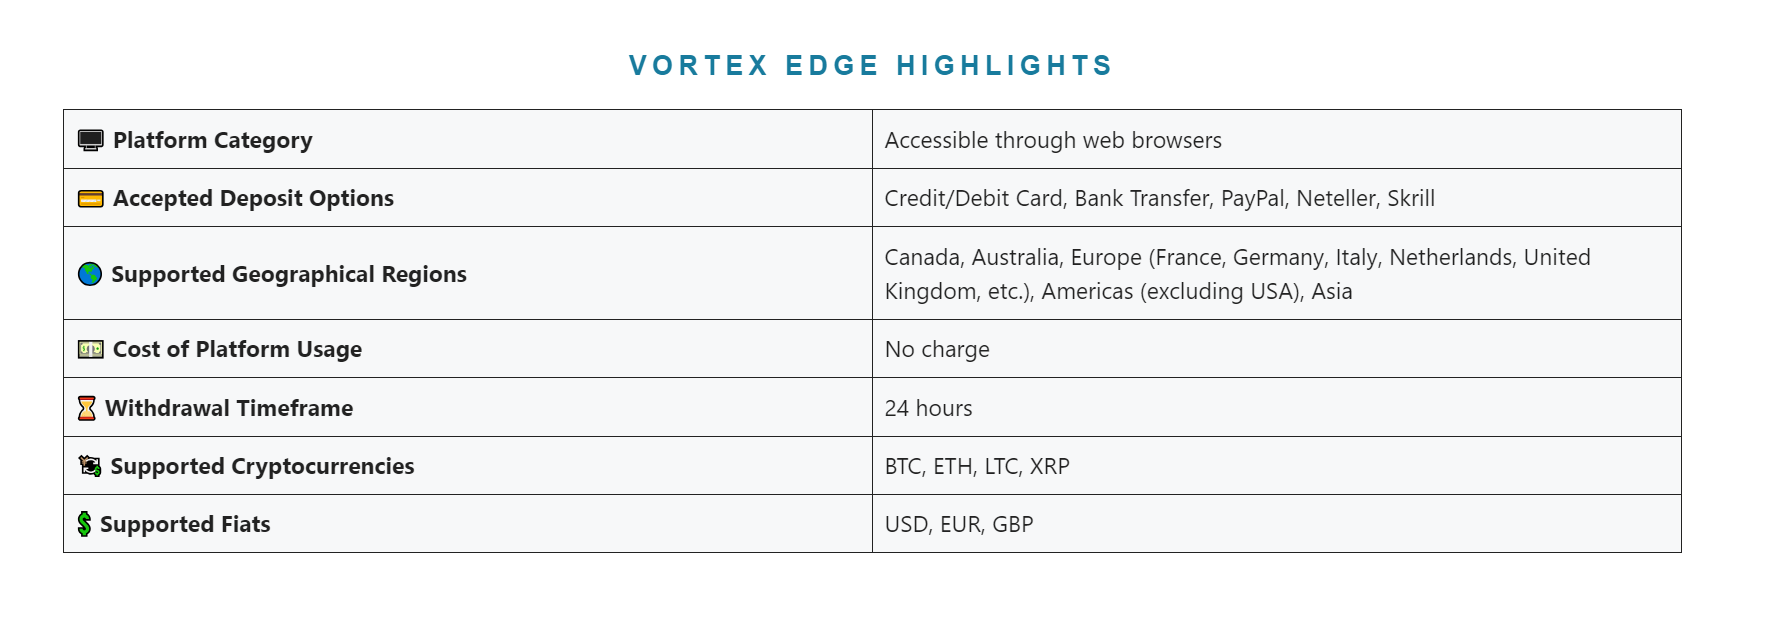 Vortex Edge Highlights